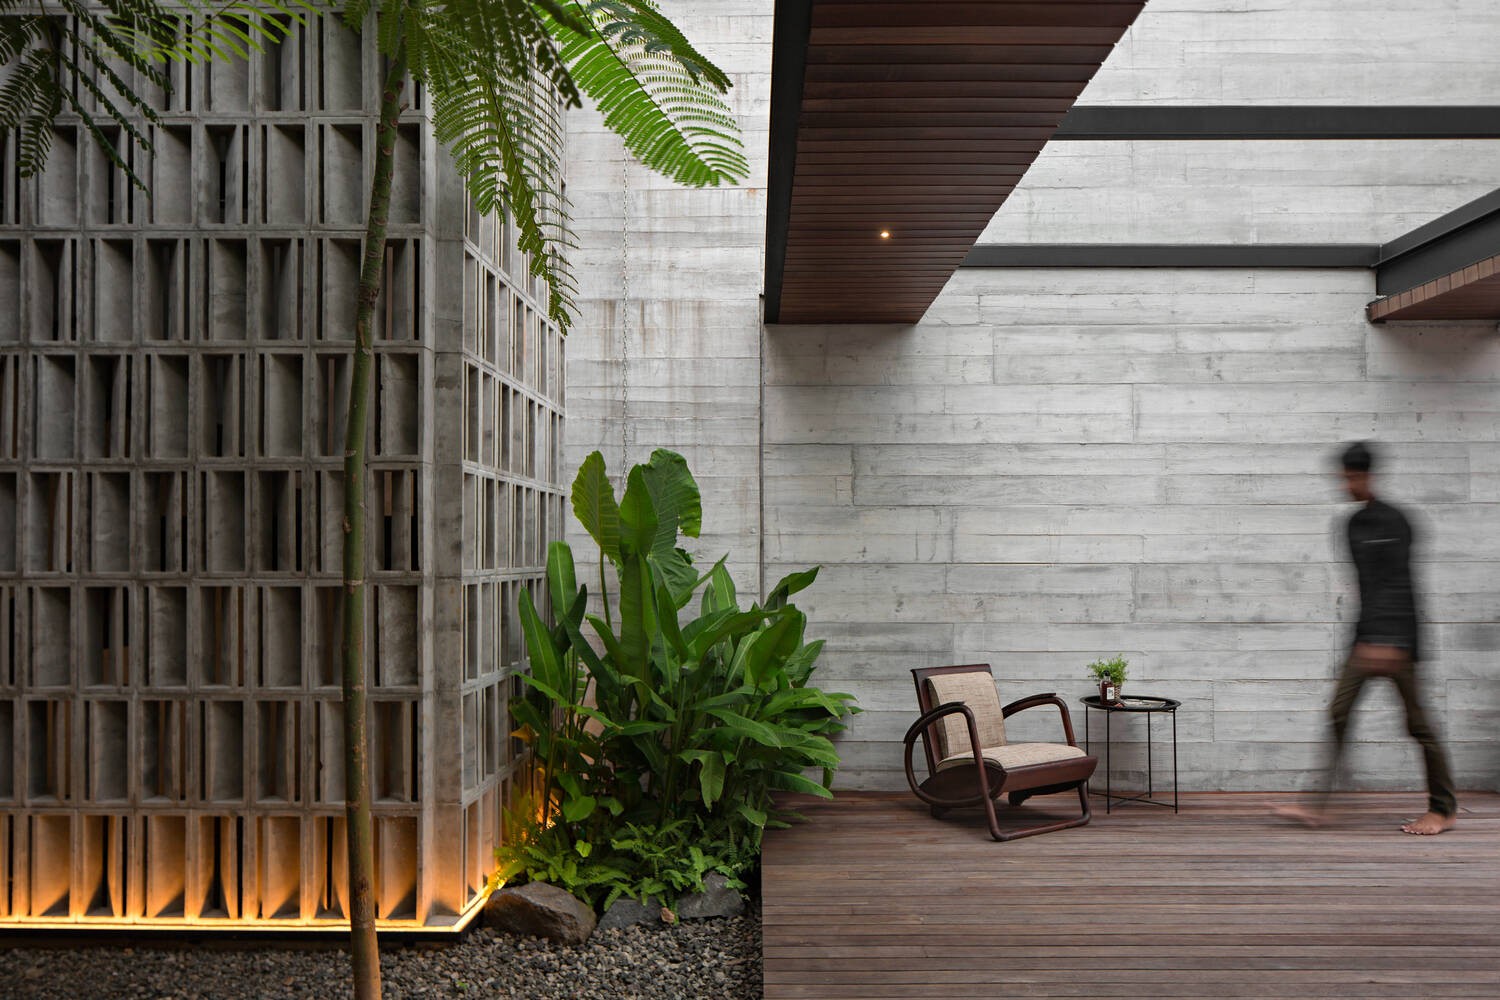 
Không gian hài hòa, sống động bởi sự kết hợp giữa vật liệu gỗ và bê tông màu xám
